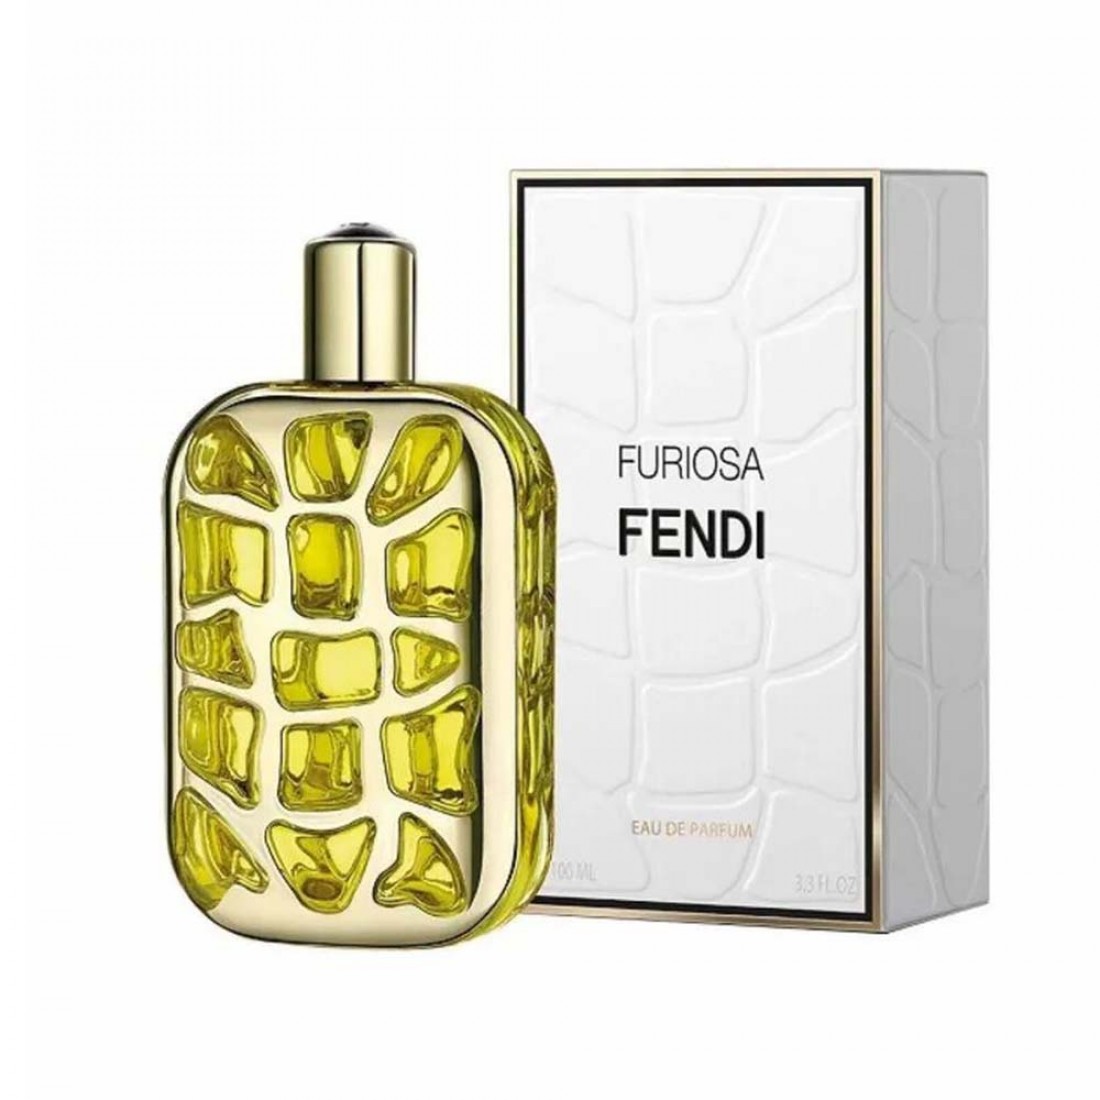 Perfume Fendi Furiosa for Women - Eau de Parfum 100 ml - عطر